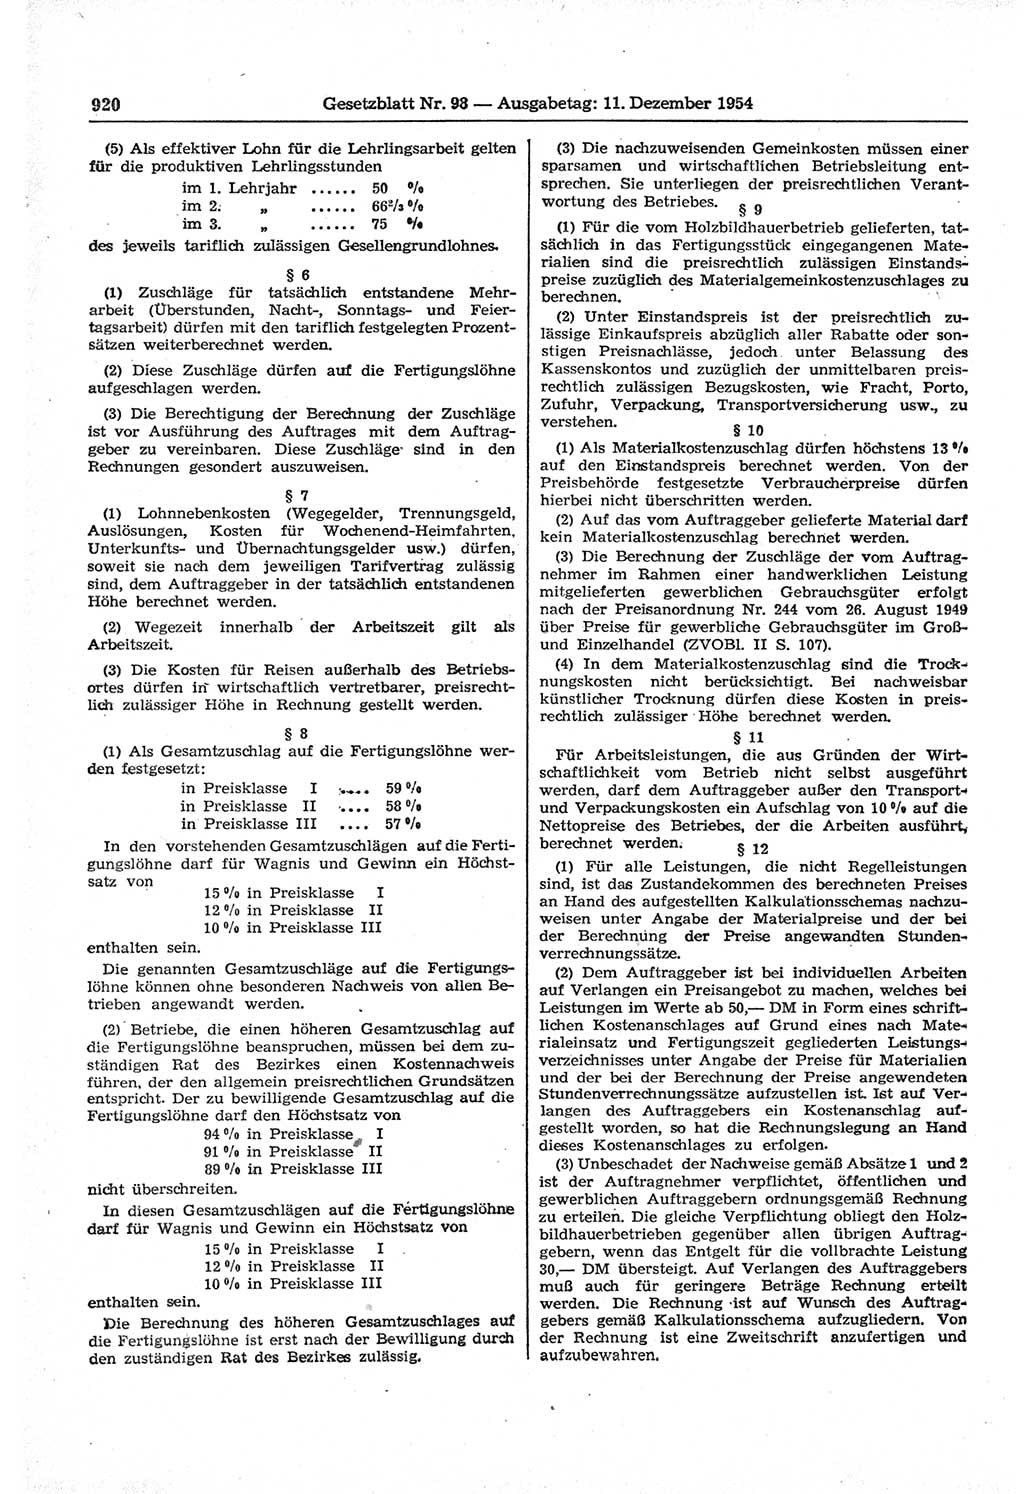 Gesetzblatt (GBl.) der Deutschen Demokratischen Republik (DDR) 1954, Seite 920 (GBl. DDR 1954, S. 920)